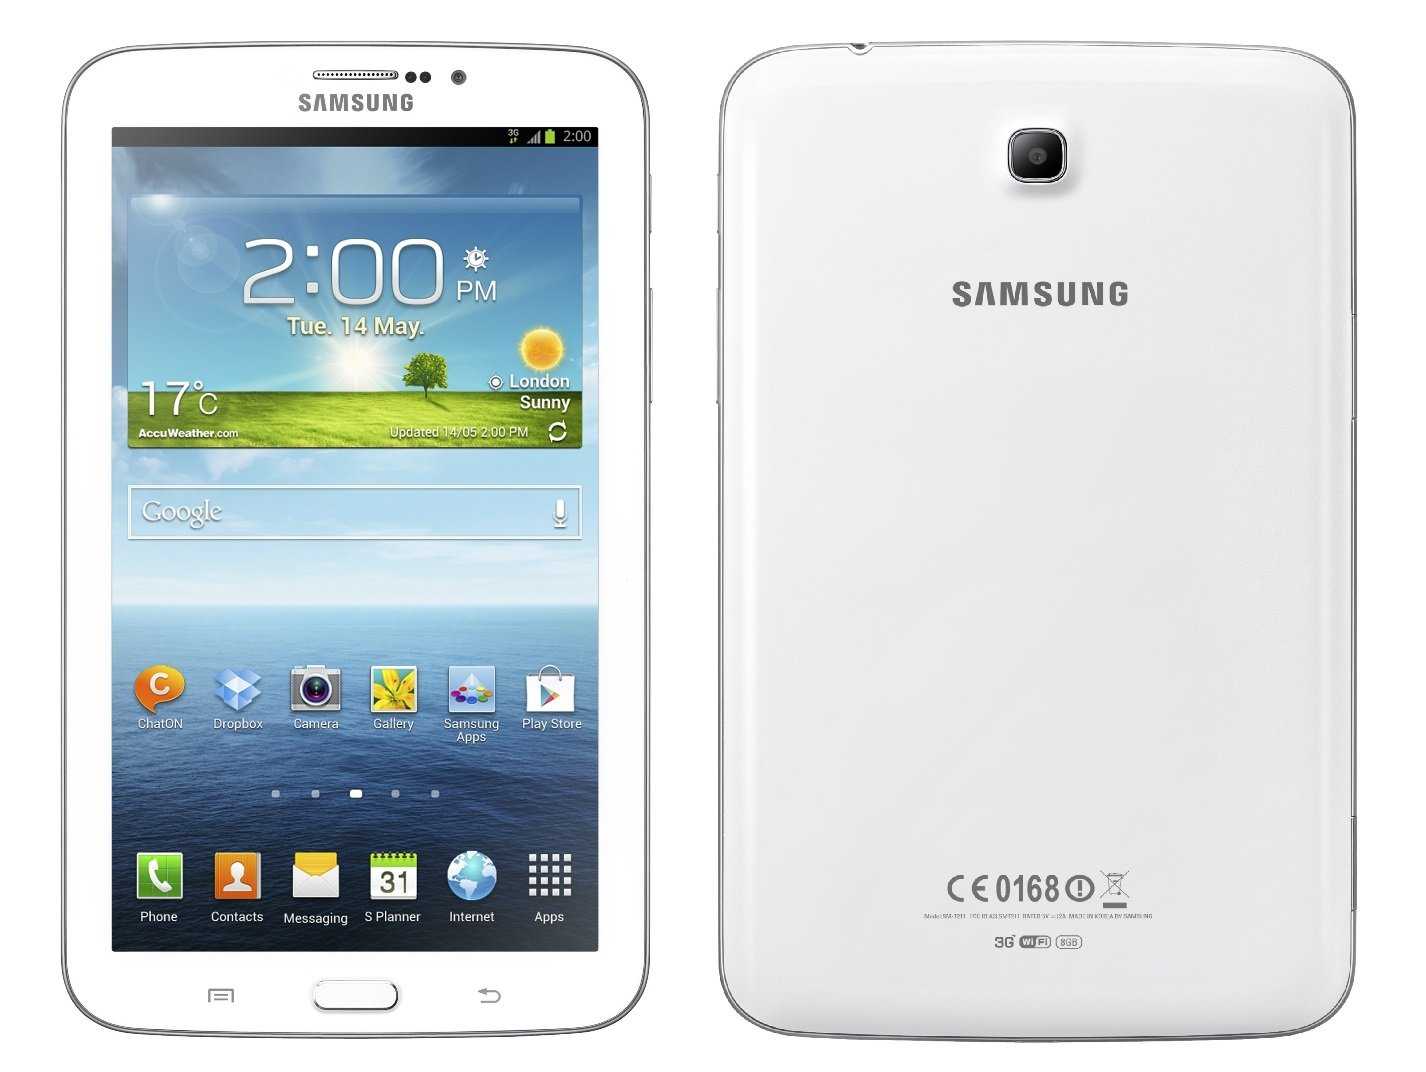 Планшет Samsung Galaxy Tab 3 80 - подробные характеристики обзоры видео фото Цены в интернет-магазинах где можно купить планшет Samsung Galaxy Tab 3 80